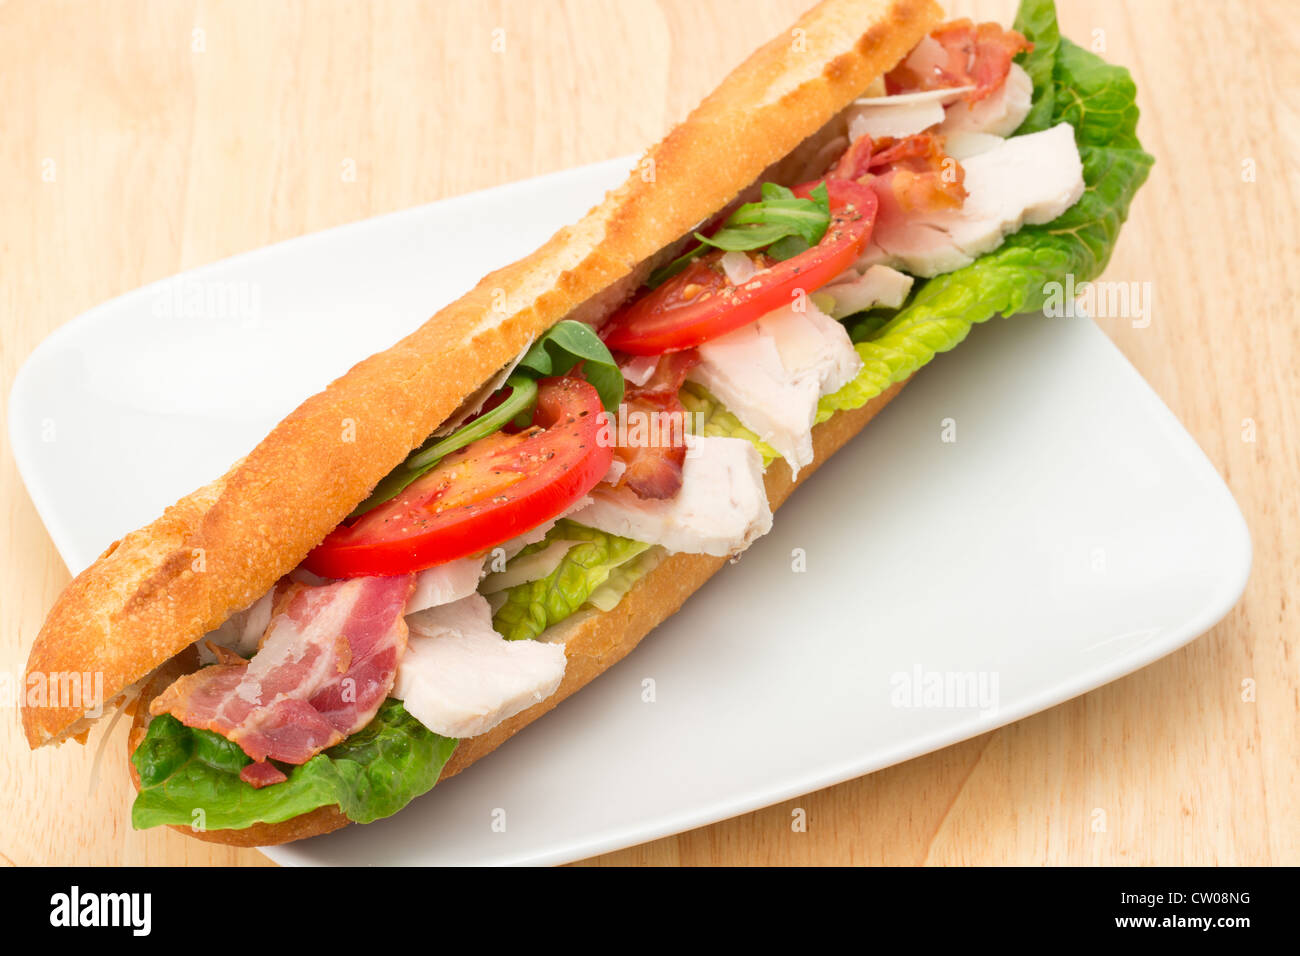 Pollo, bacon y ensalada llena baguette servido en una placa blanca - Foto de estudio Foto de stock